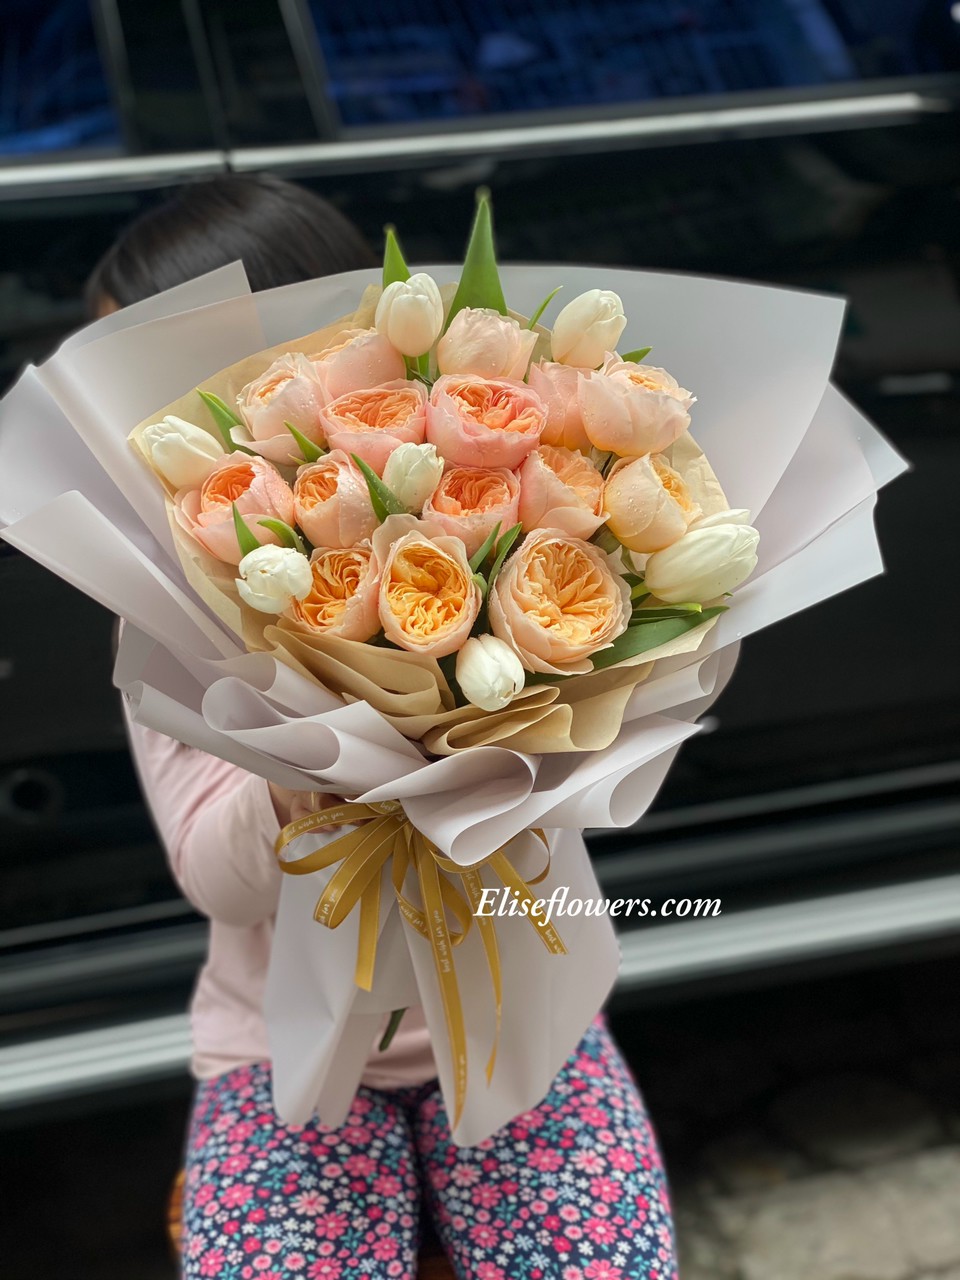 Hoa chúc mừng sinh nhật đẹp ở Hà Nội. Bó hoa sinh nhật đẹp tại Hà Nội